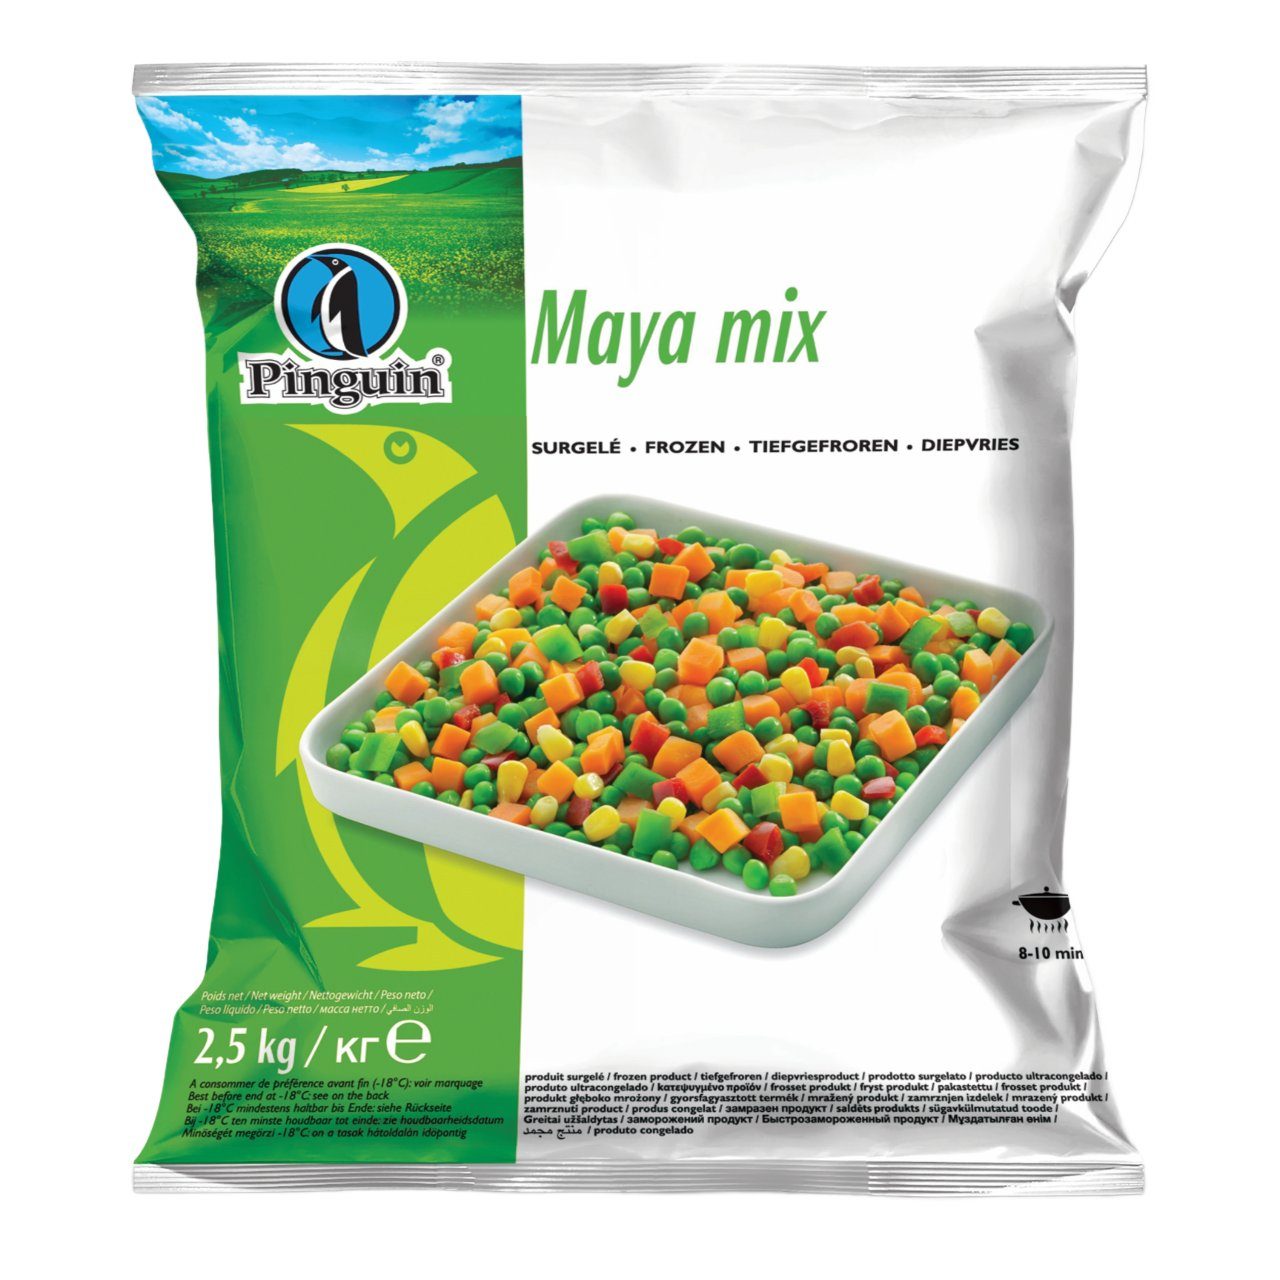 Maya mix